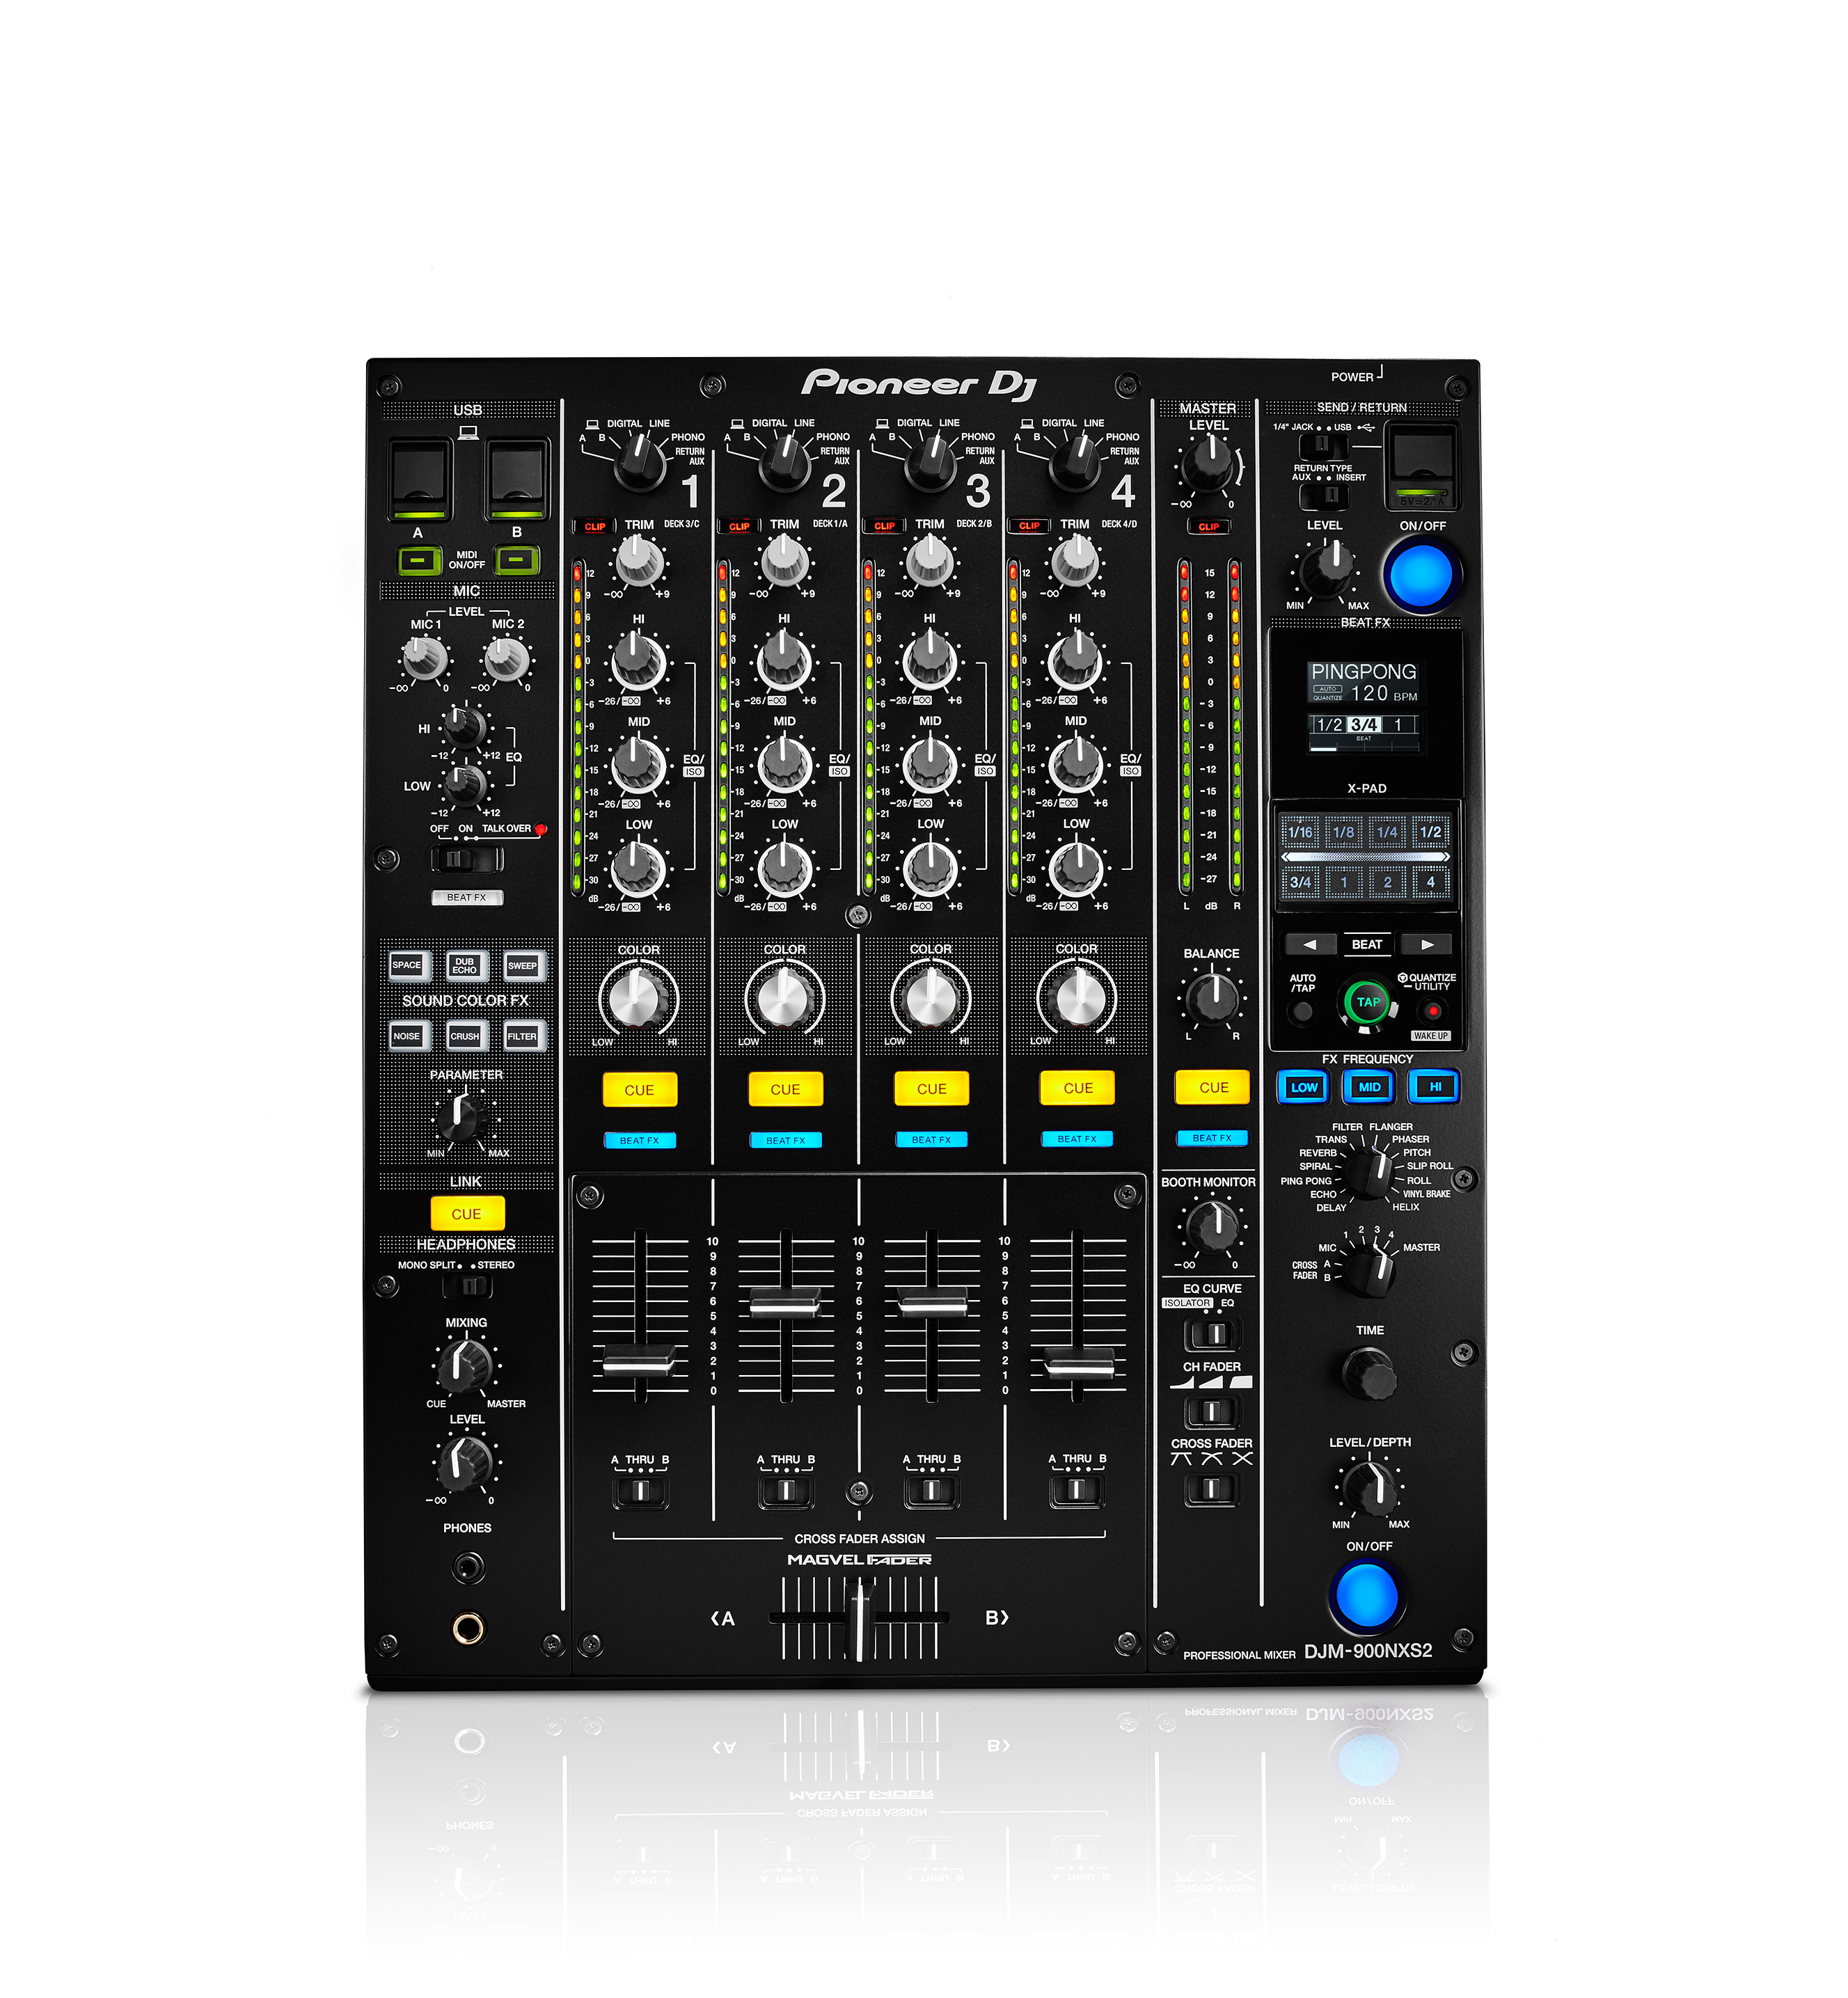 Nuevo y renovado mixer Pioneer DJM-900NXS2